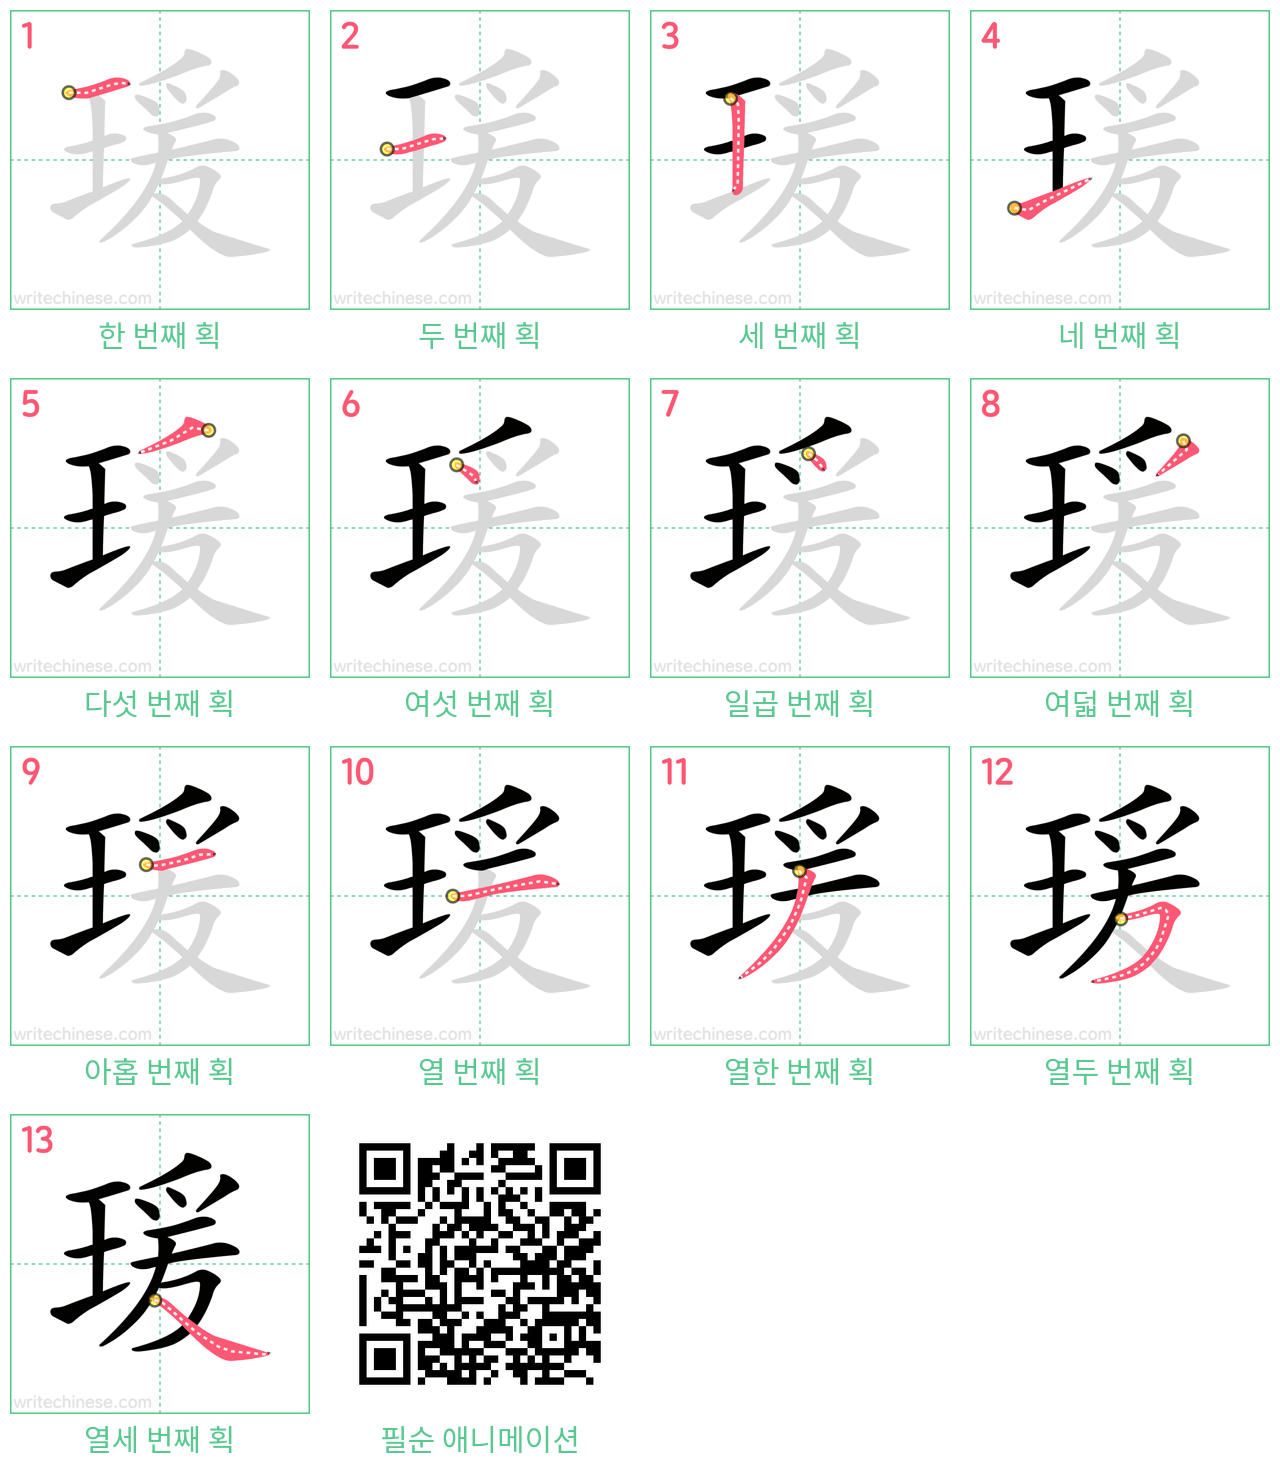 瑗 step-by-step stroke order diagrams